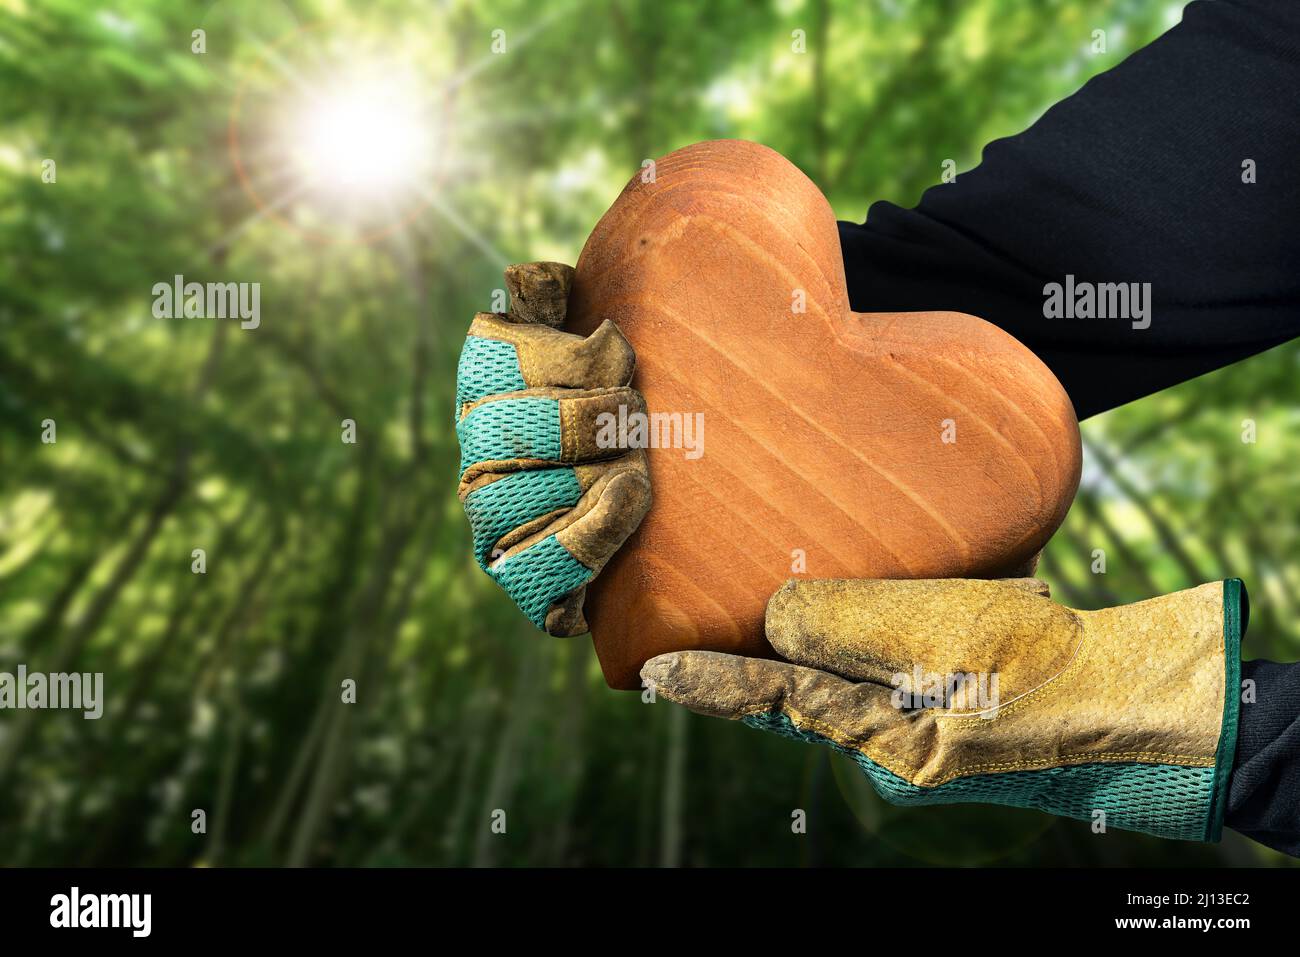 Trabajador manual con guantes de trabajo de protección que sostienen un corazón de madera marrón en un bosque verde. Concepto de recursos sostenibles y conservación del medio ambiente Foto de stock